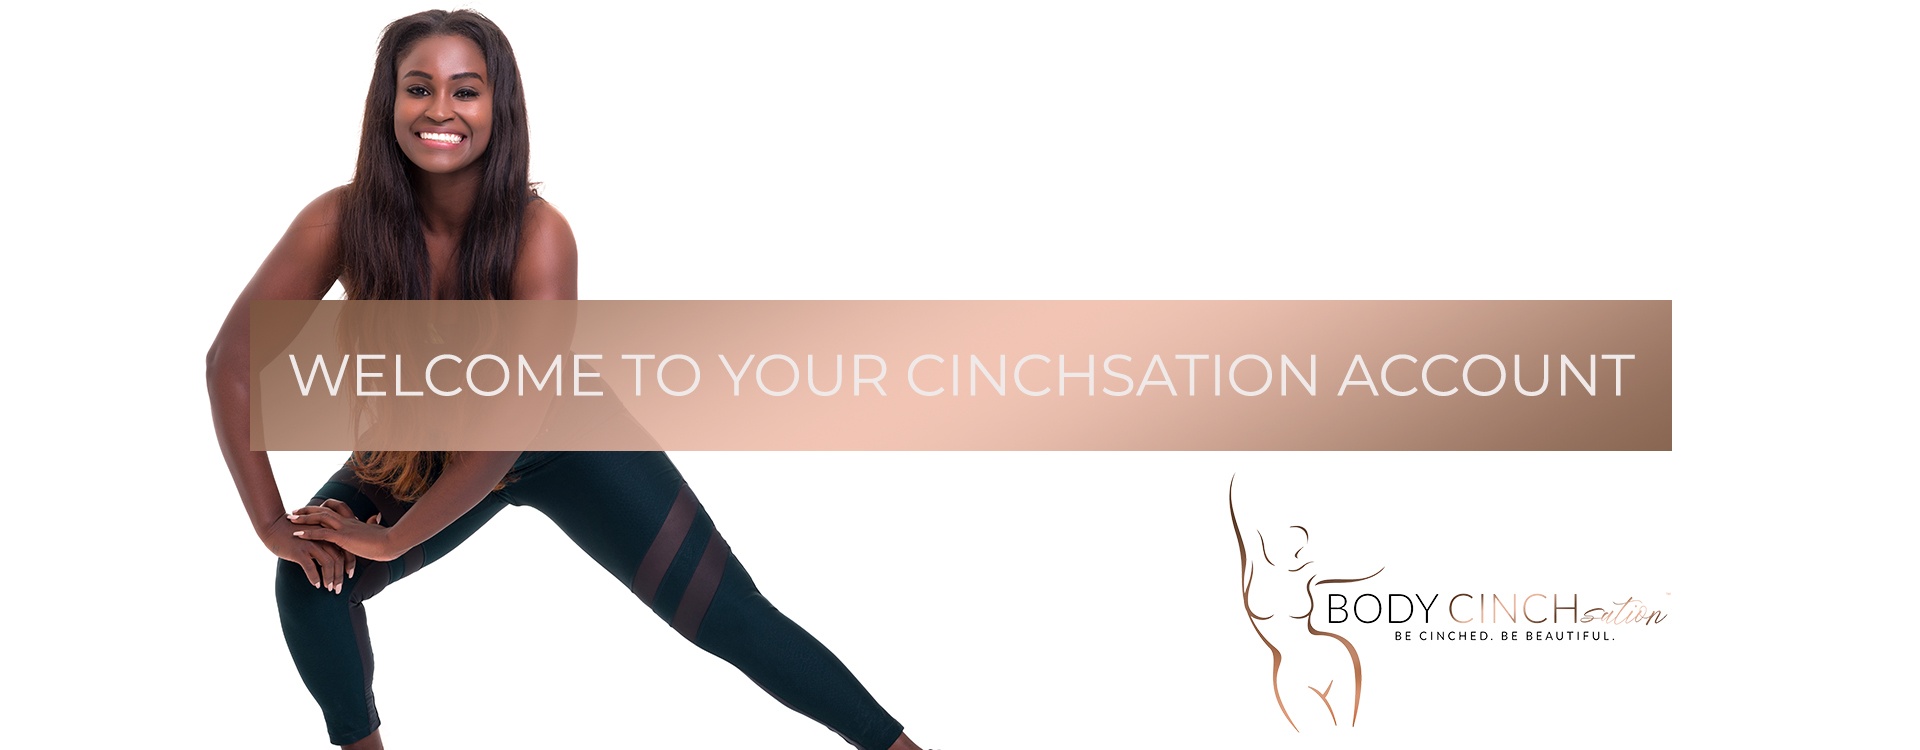 Body CINCHsation - My Account